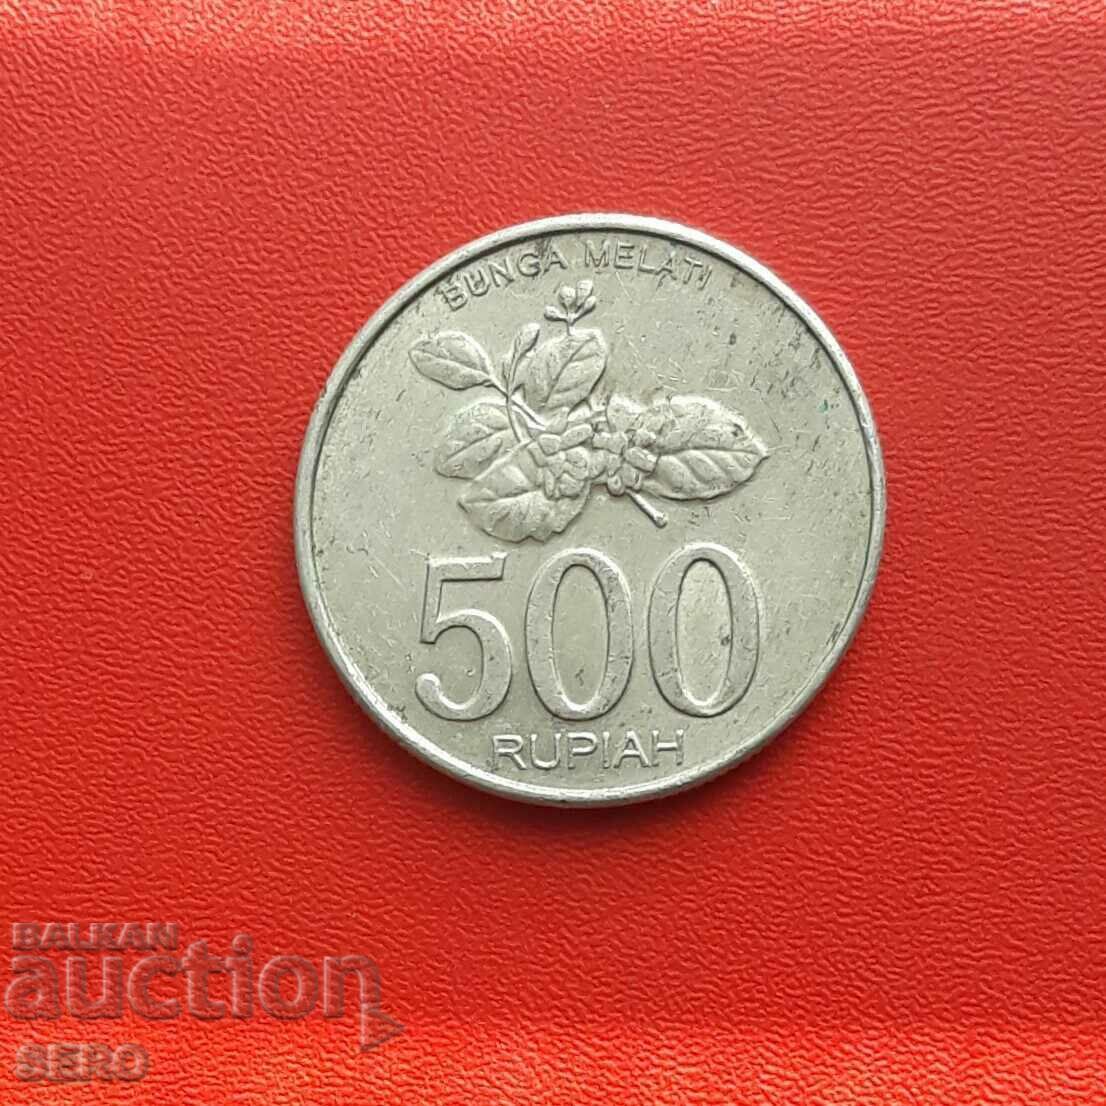 Indonesia-500 rupees 2003